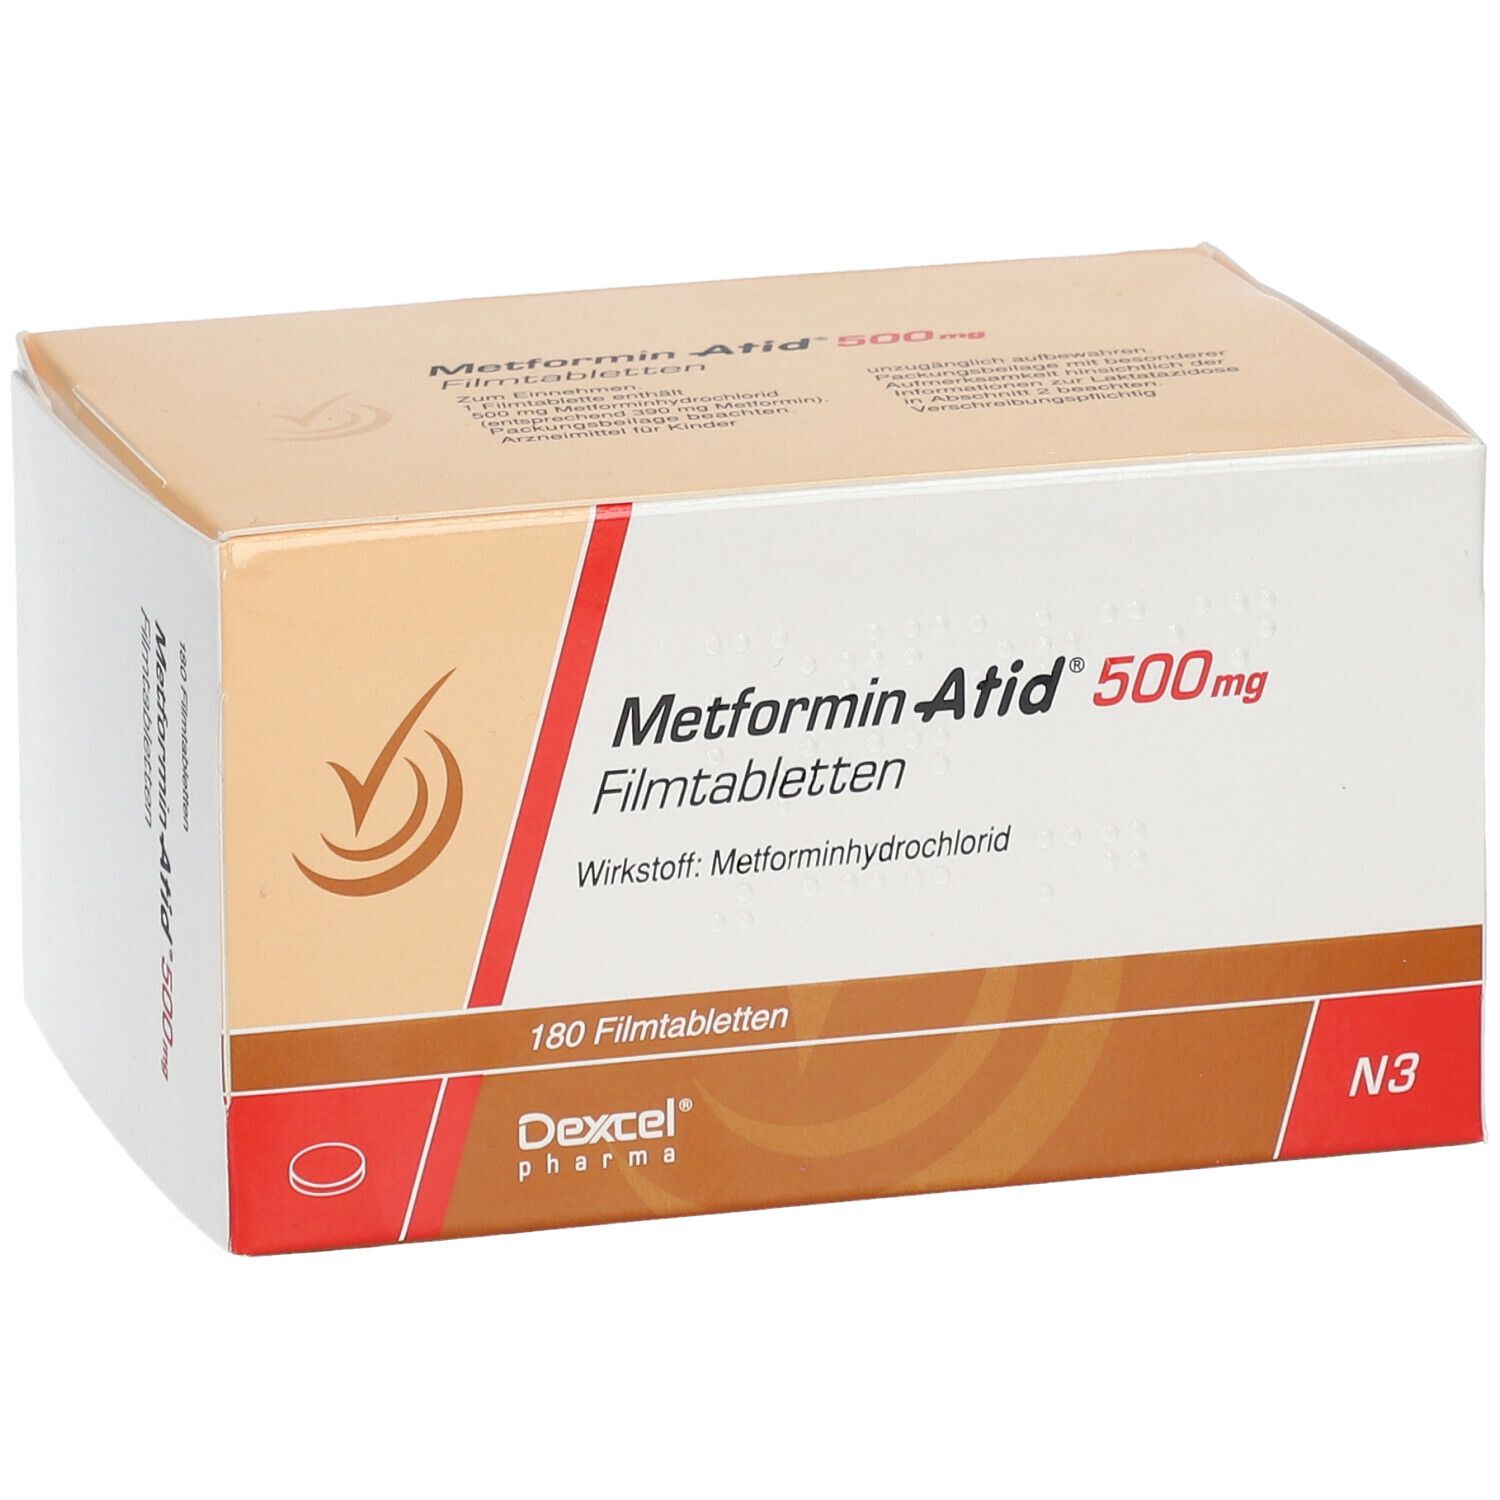 Metformin Atid® 500 mg